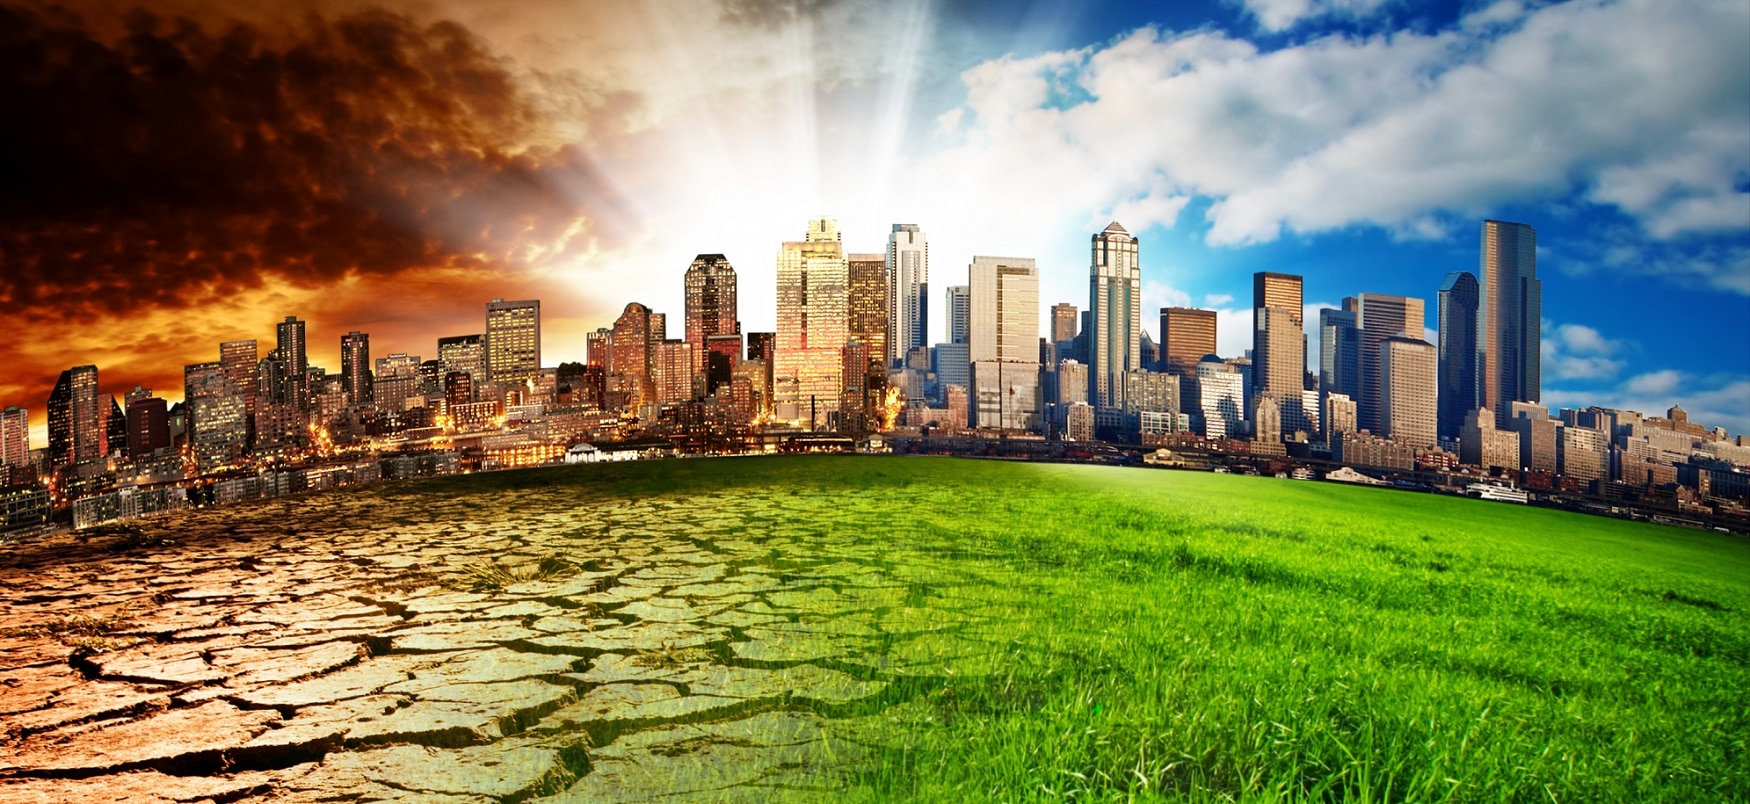 Acciones mundiales para contener el cambio climático | BBVA